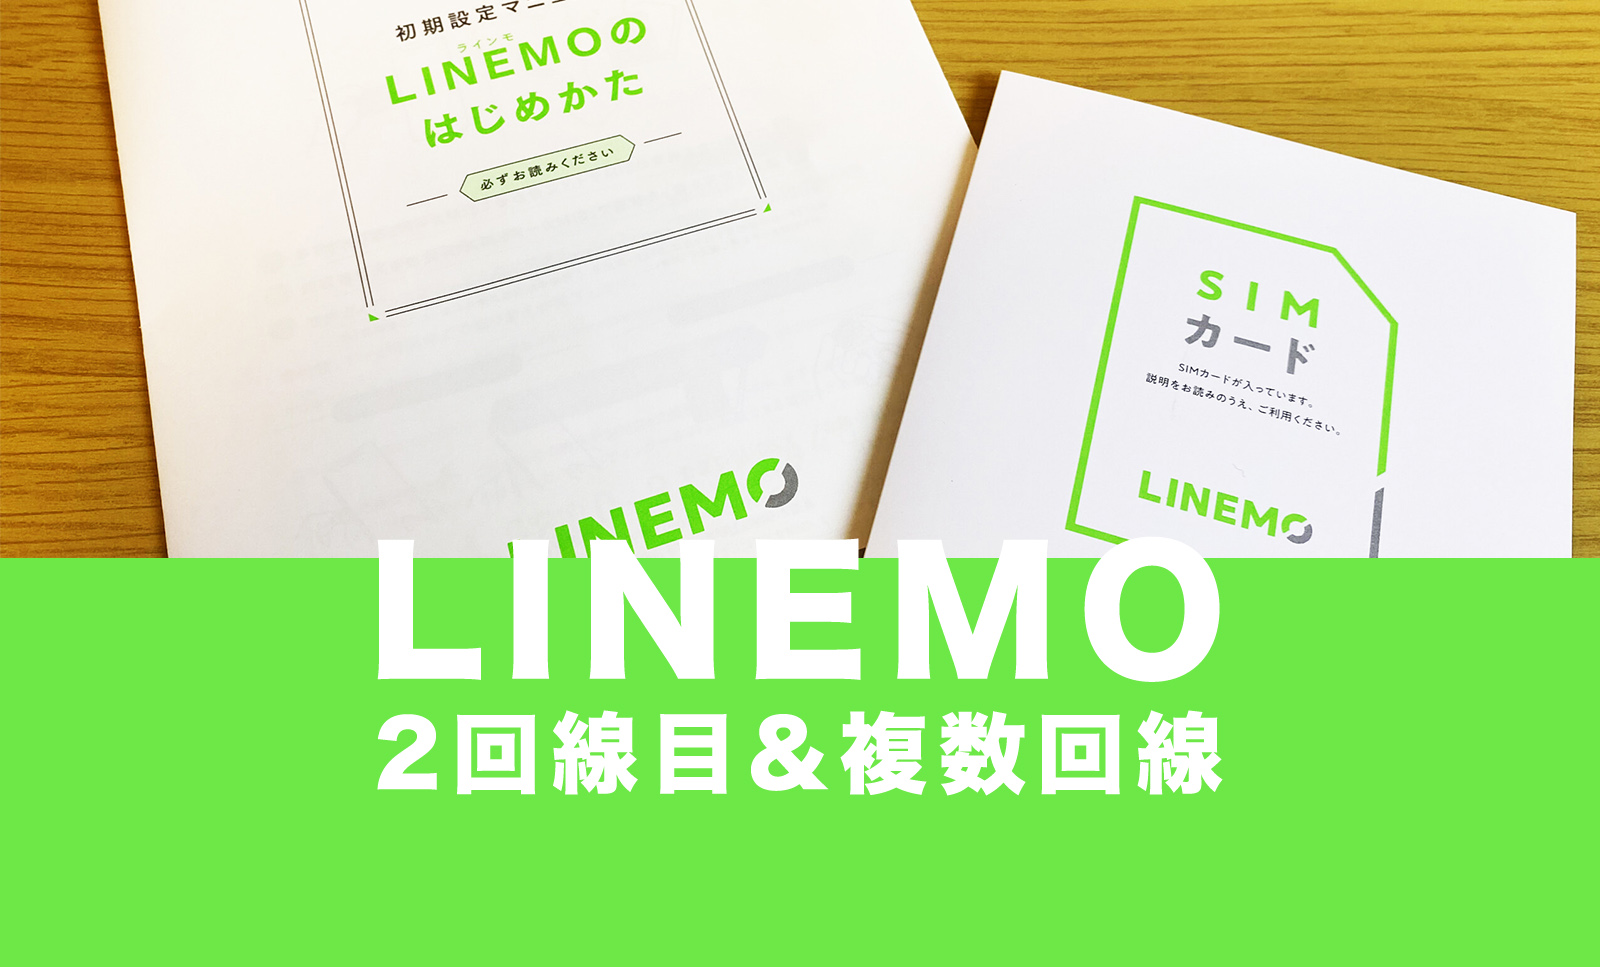 LINEMO(ラインモ)は2回線目&複数回線を契約申し込み可能、2台目以降も同一名義でOKのサムネイル画像